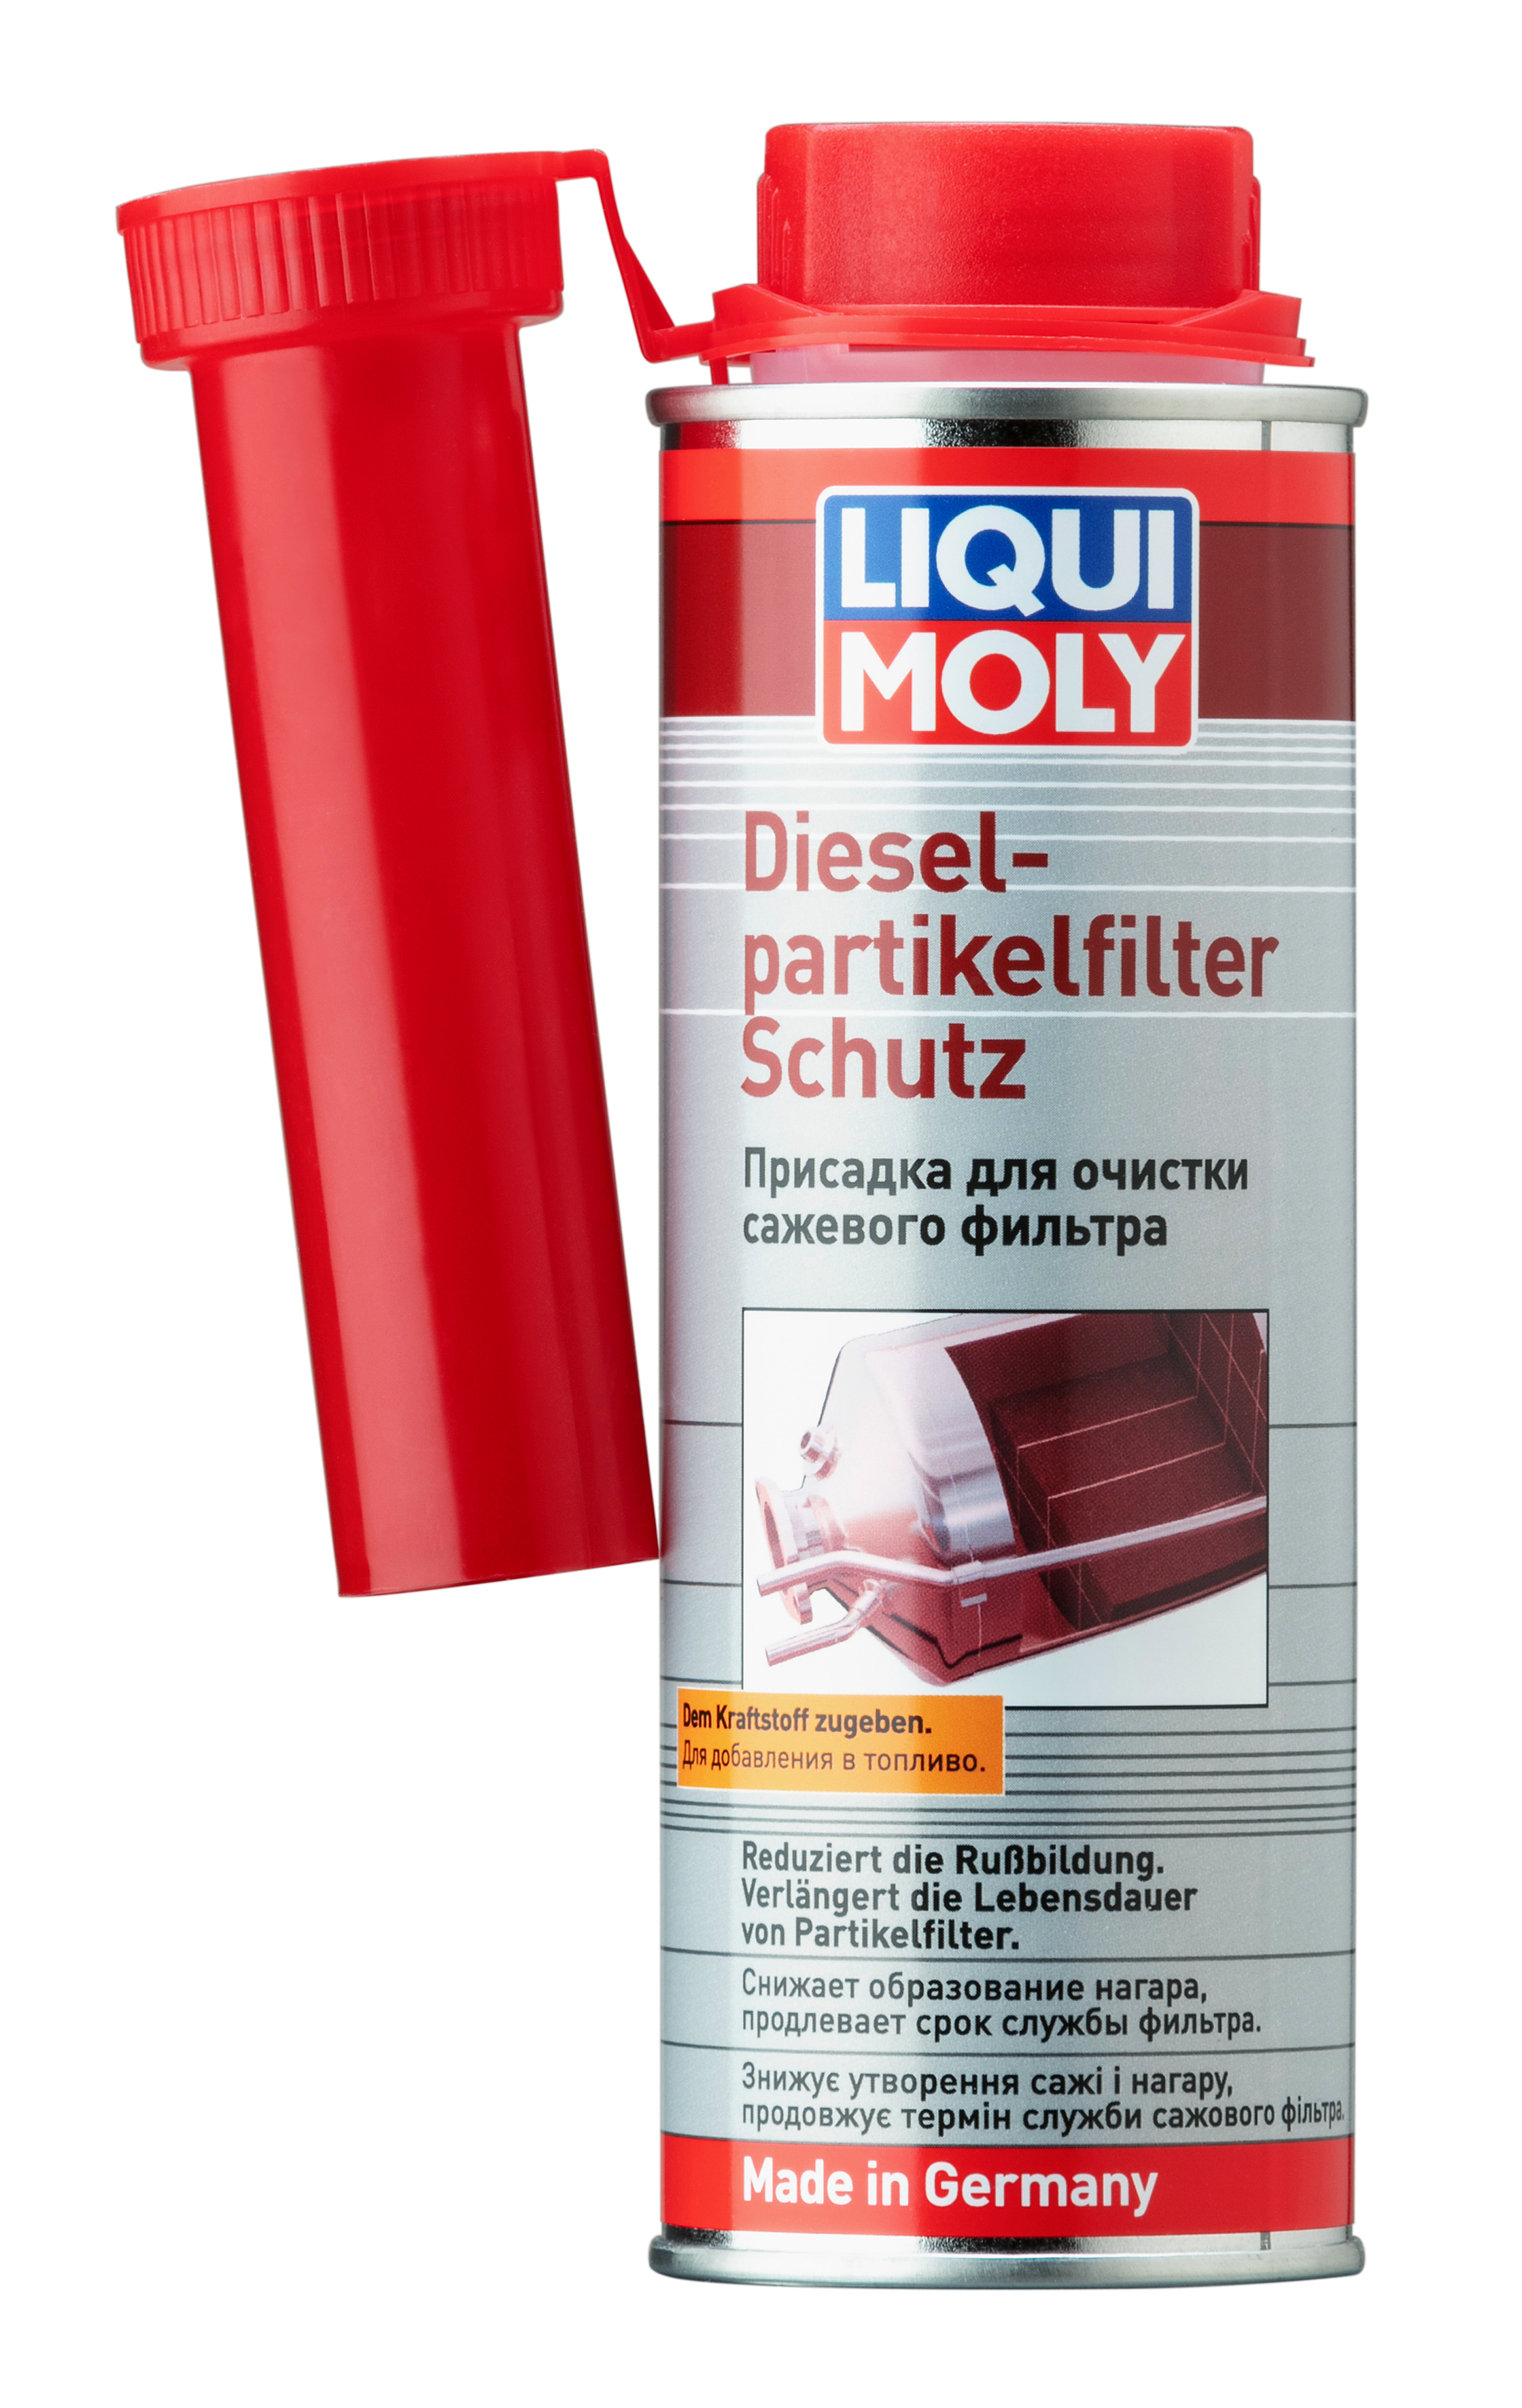 Присадка для очистки саж.фильтра Diesel Partikelfilter Schutz, 250мл - Liqui Moly 2298